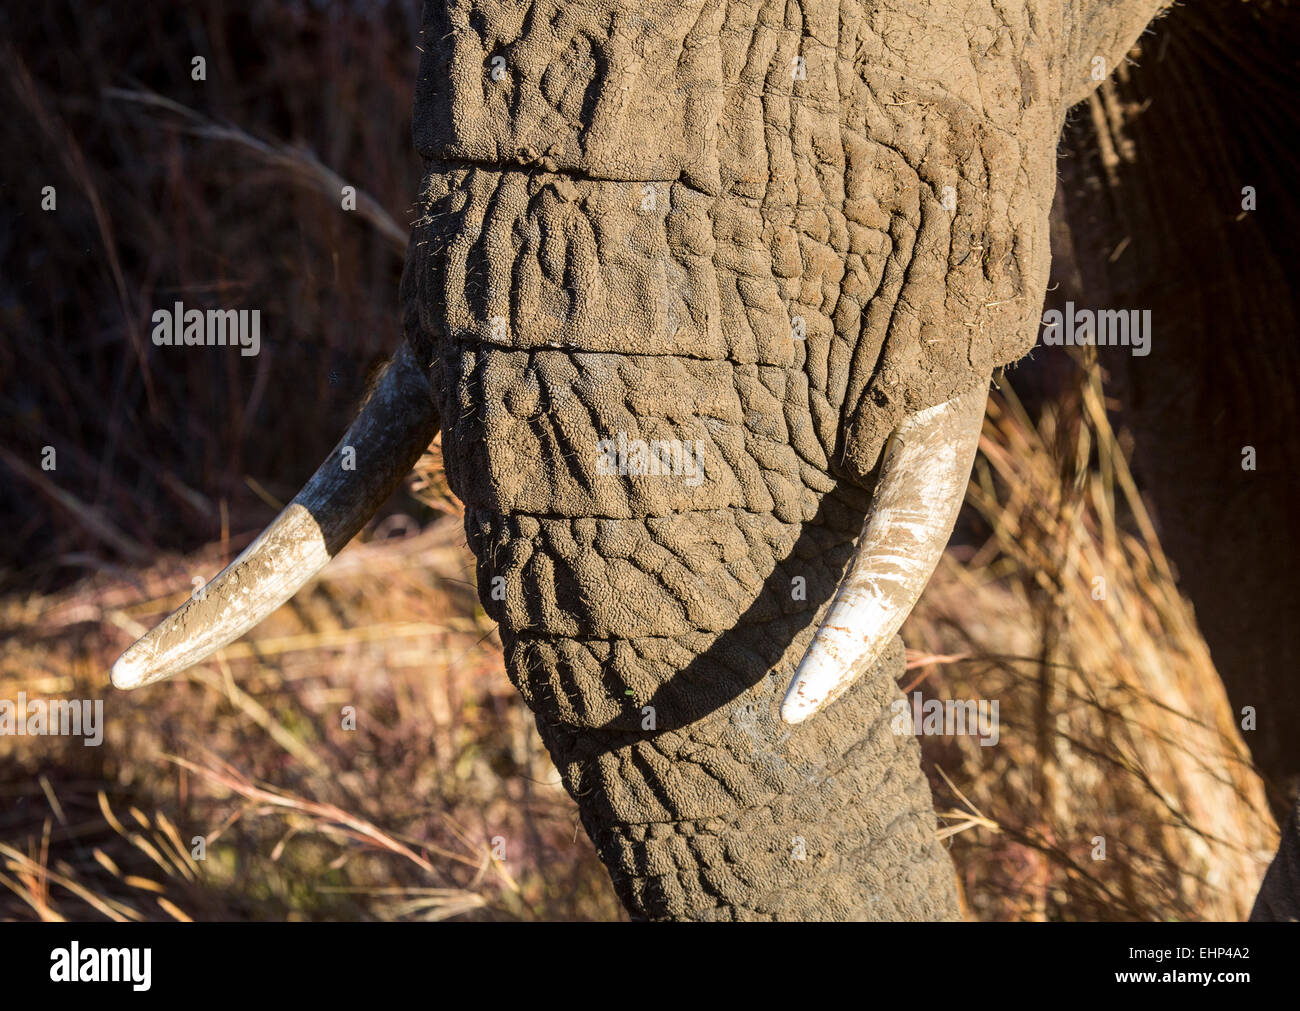 Vue rapprochée de défenses d'éléphants africains & trunk Banque D'Images